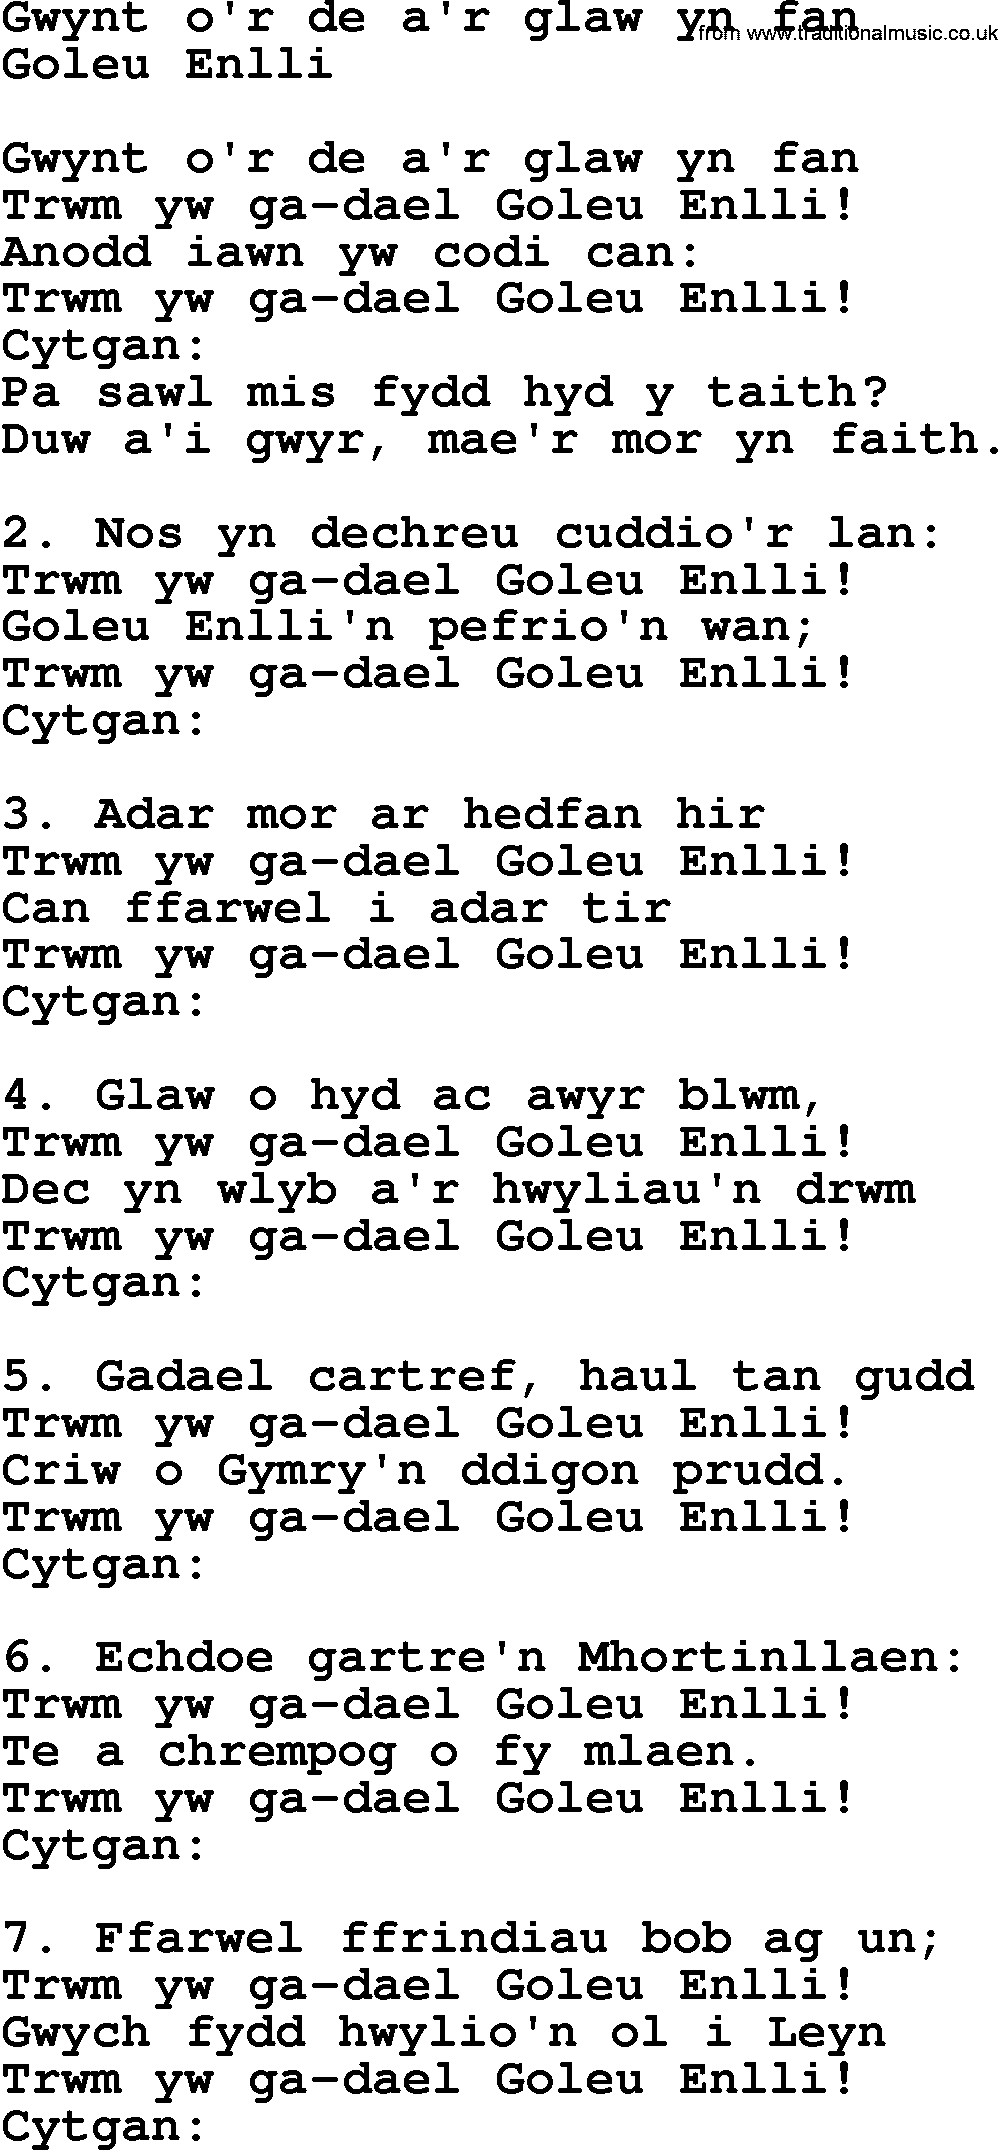 Sea Song or Shantie: Gwynt Or De Ar Glaw Yn Fan, lyrics